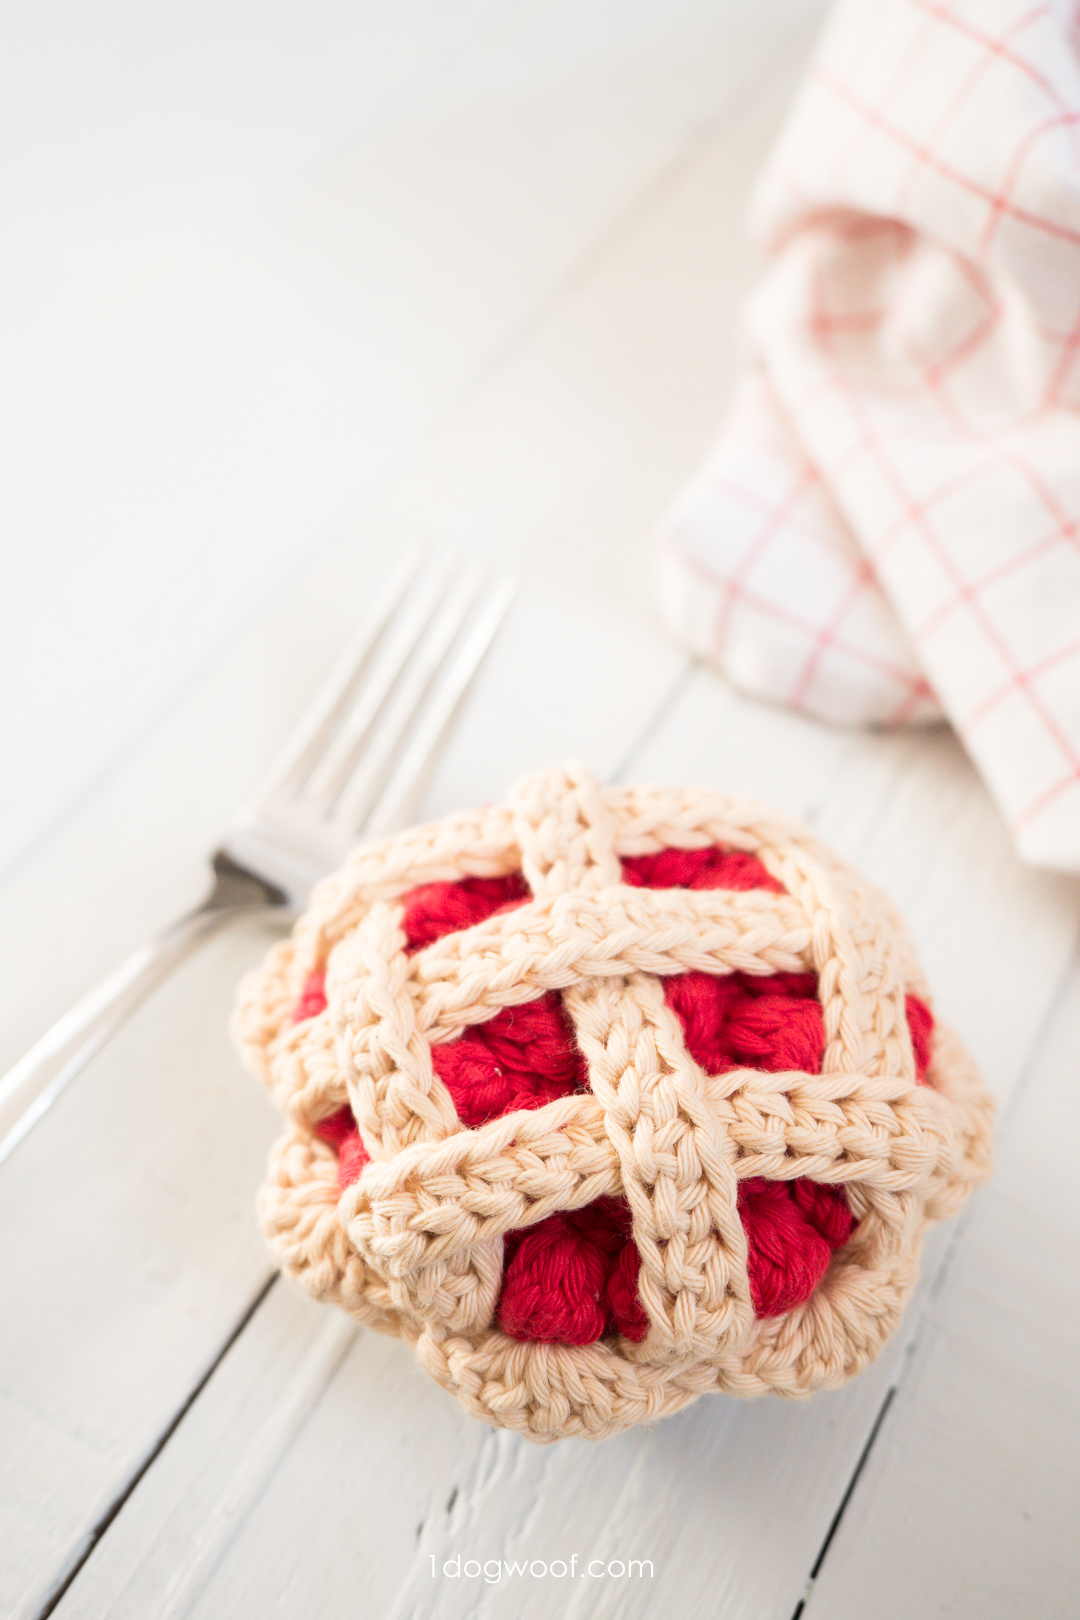 用钩针编织一个樱桃派作为游戏食物或umi